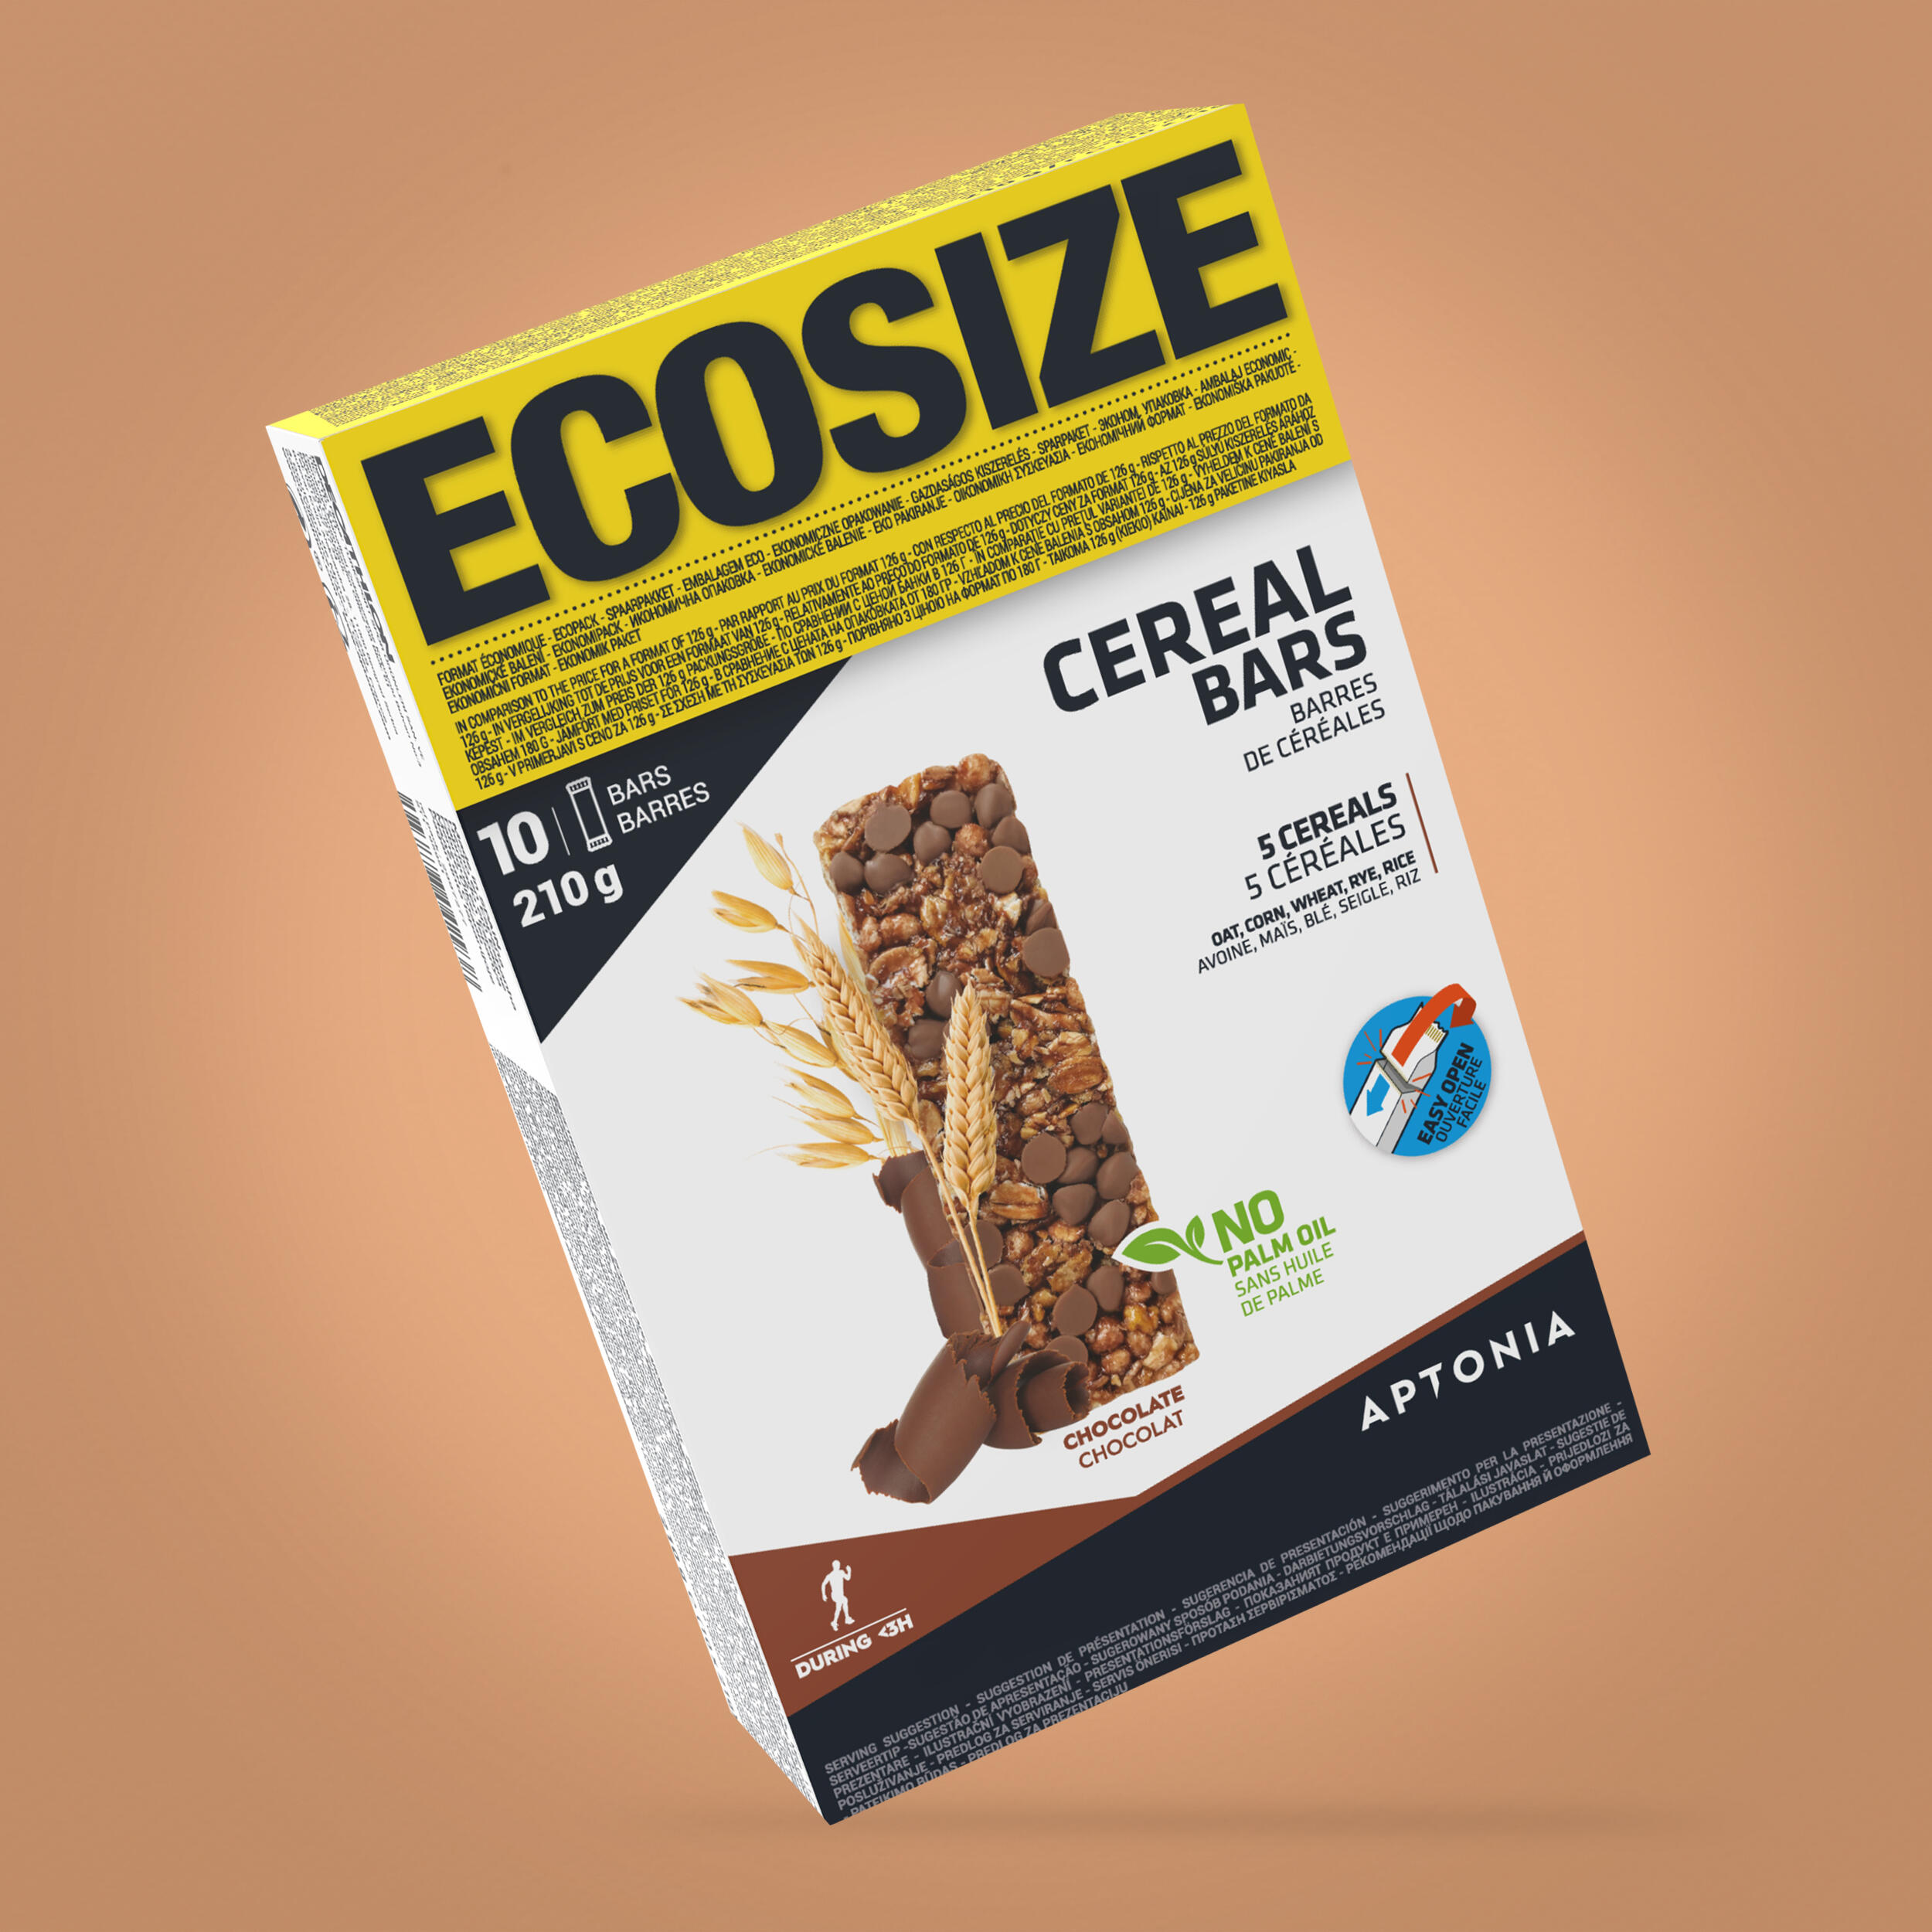 Baton cereale ciocolată Ecosize Clak 10x21g APTONIA imagine 2022 topbody.ro